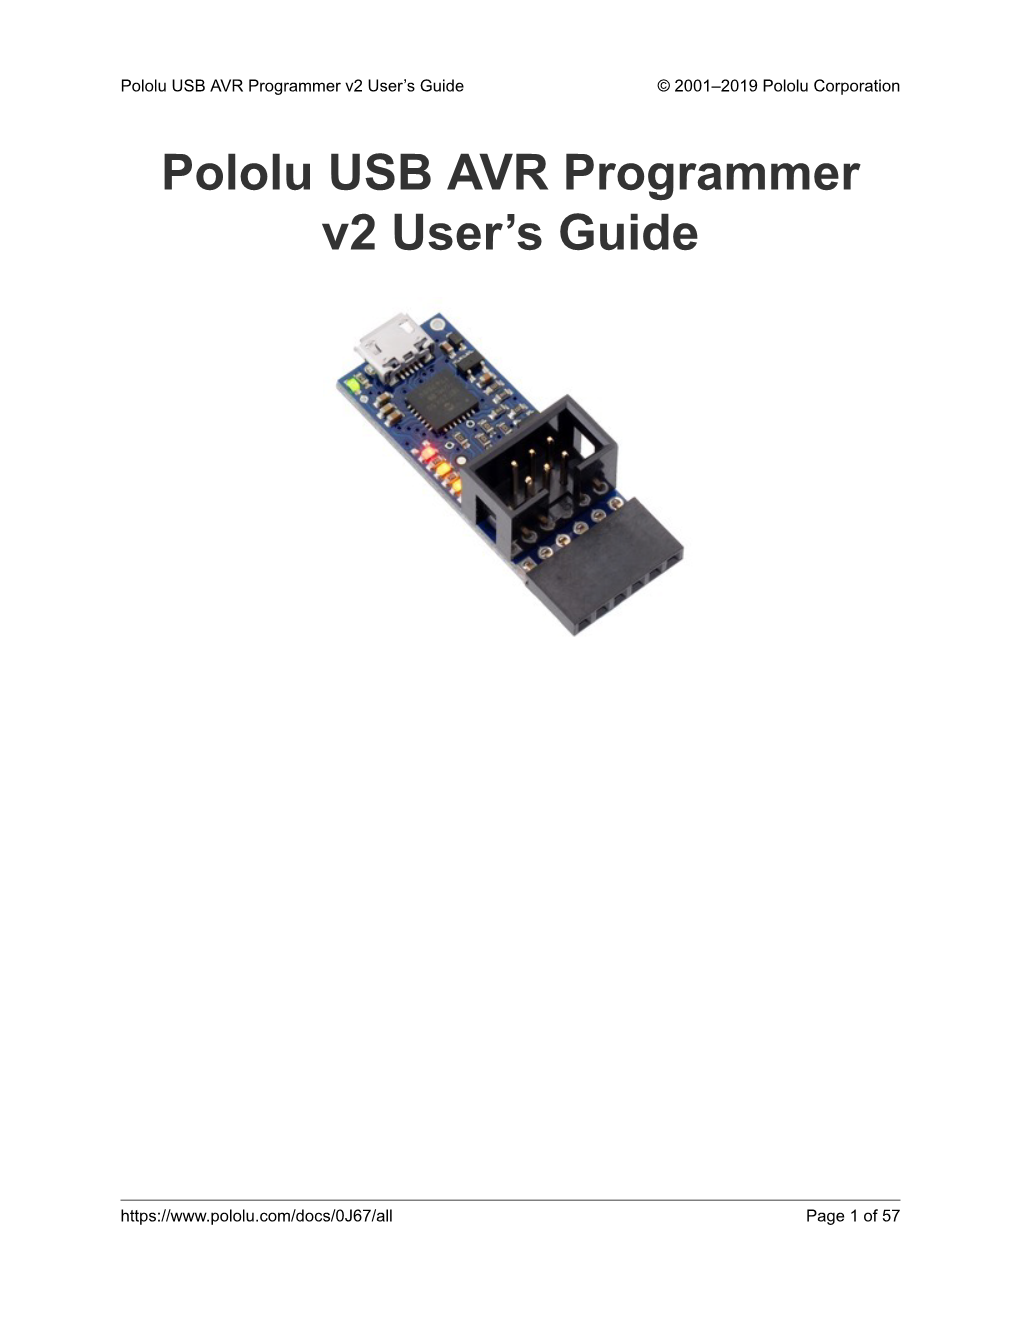 Pololu USB AVR Programmer V2 User's Guide